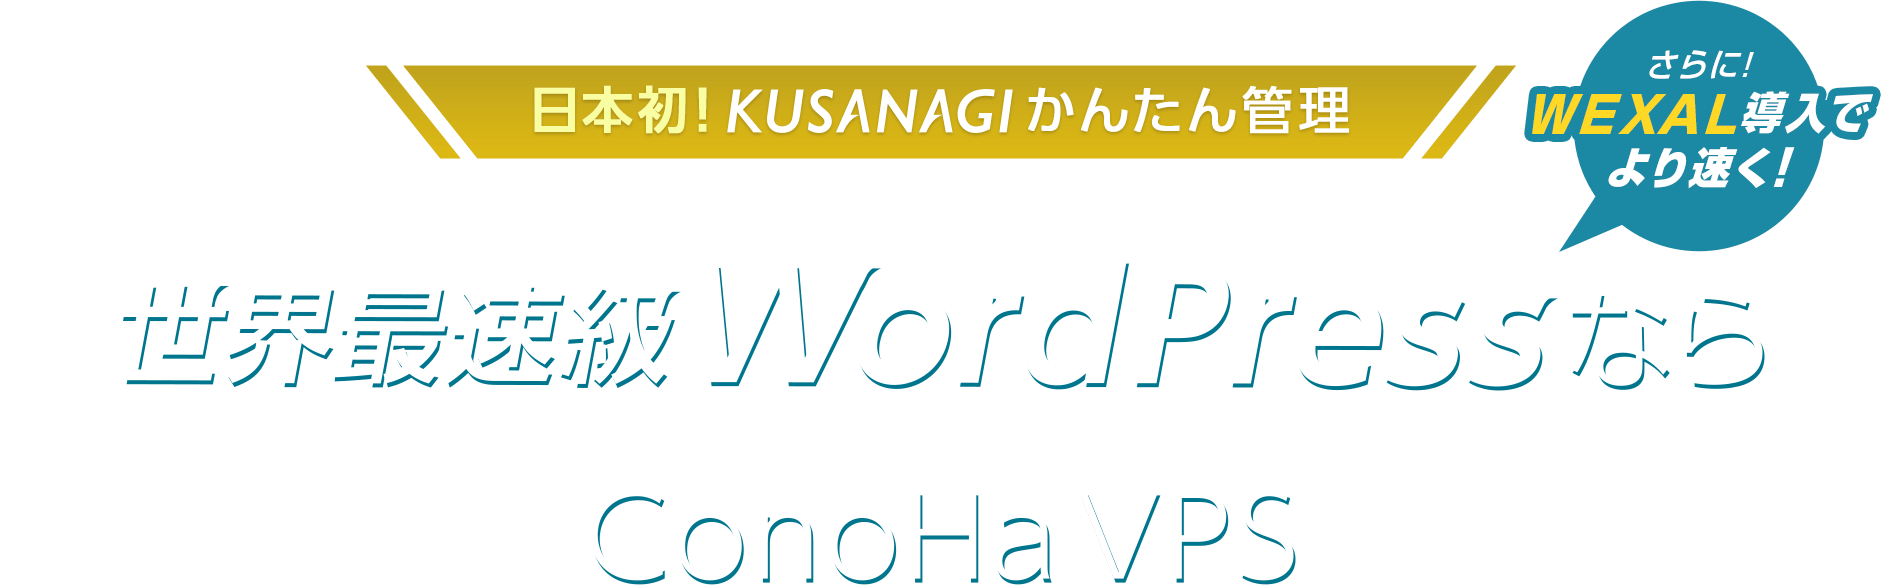 世界最速級 WordPressなら ConoHa VPS